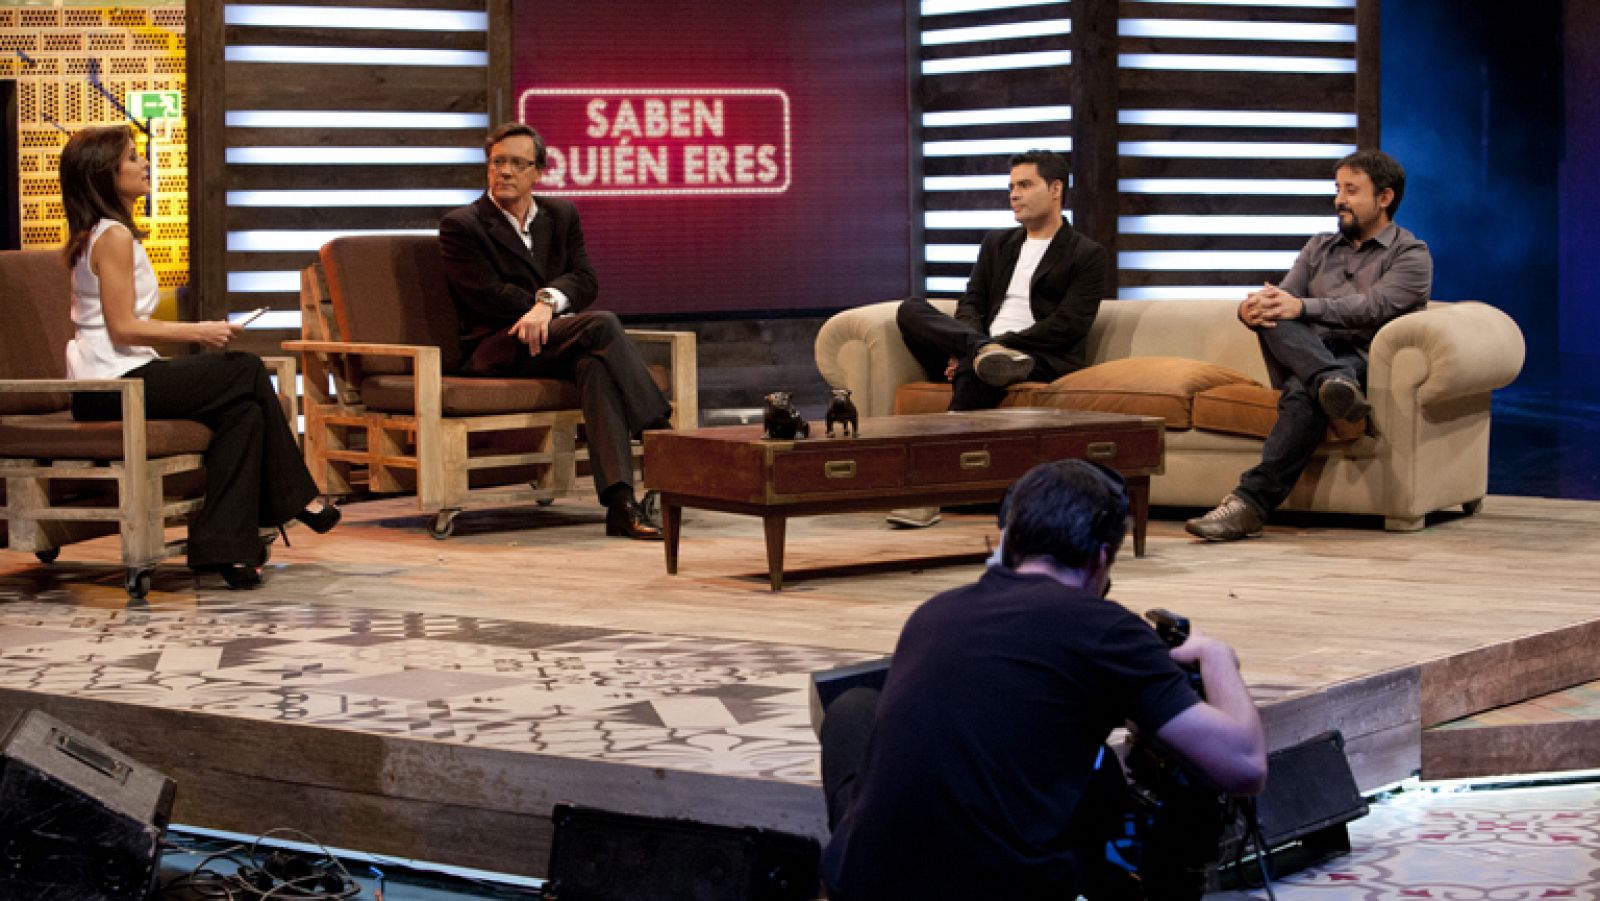 Torres y Reyes: El debate: "Saben quién eres" | RTVE Play